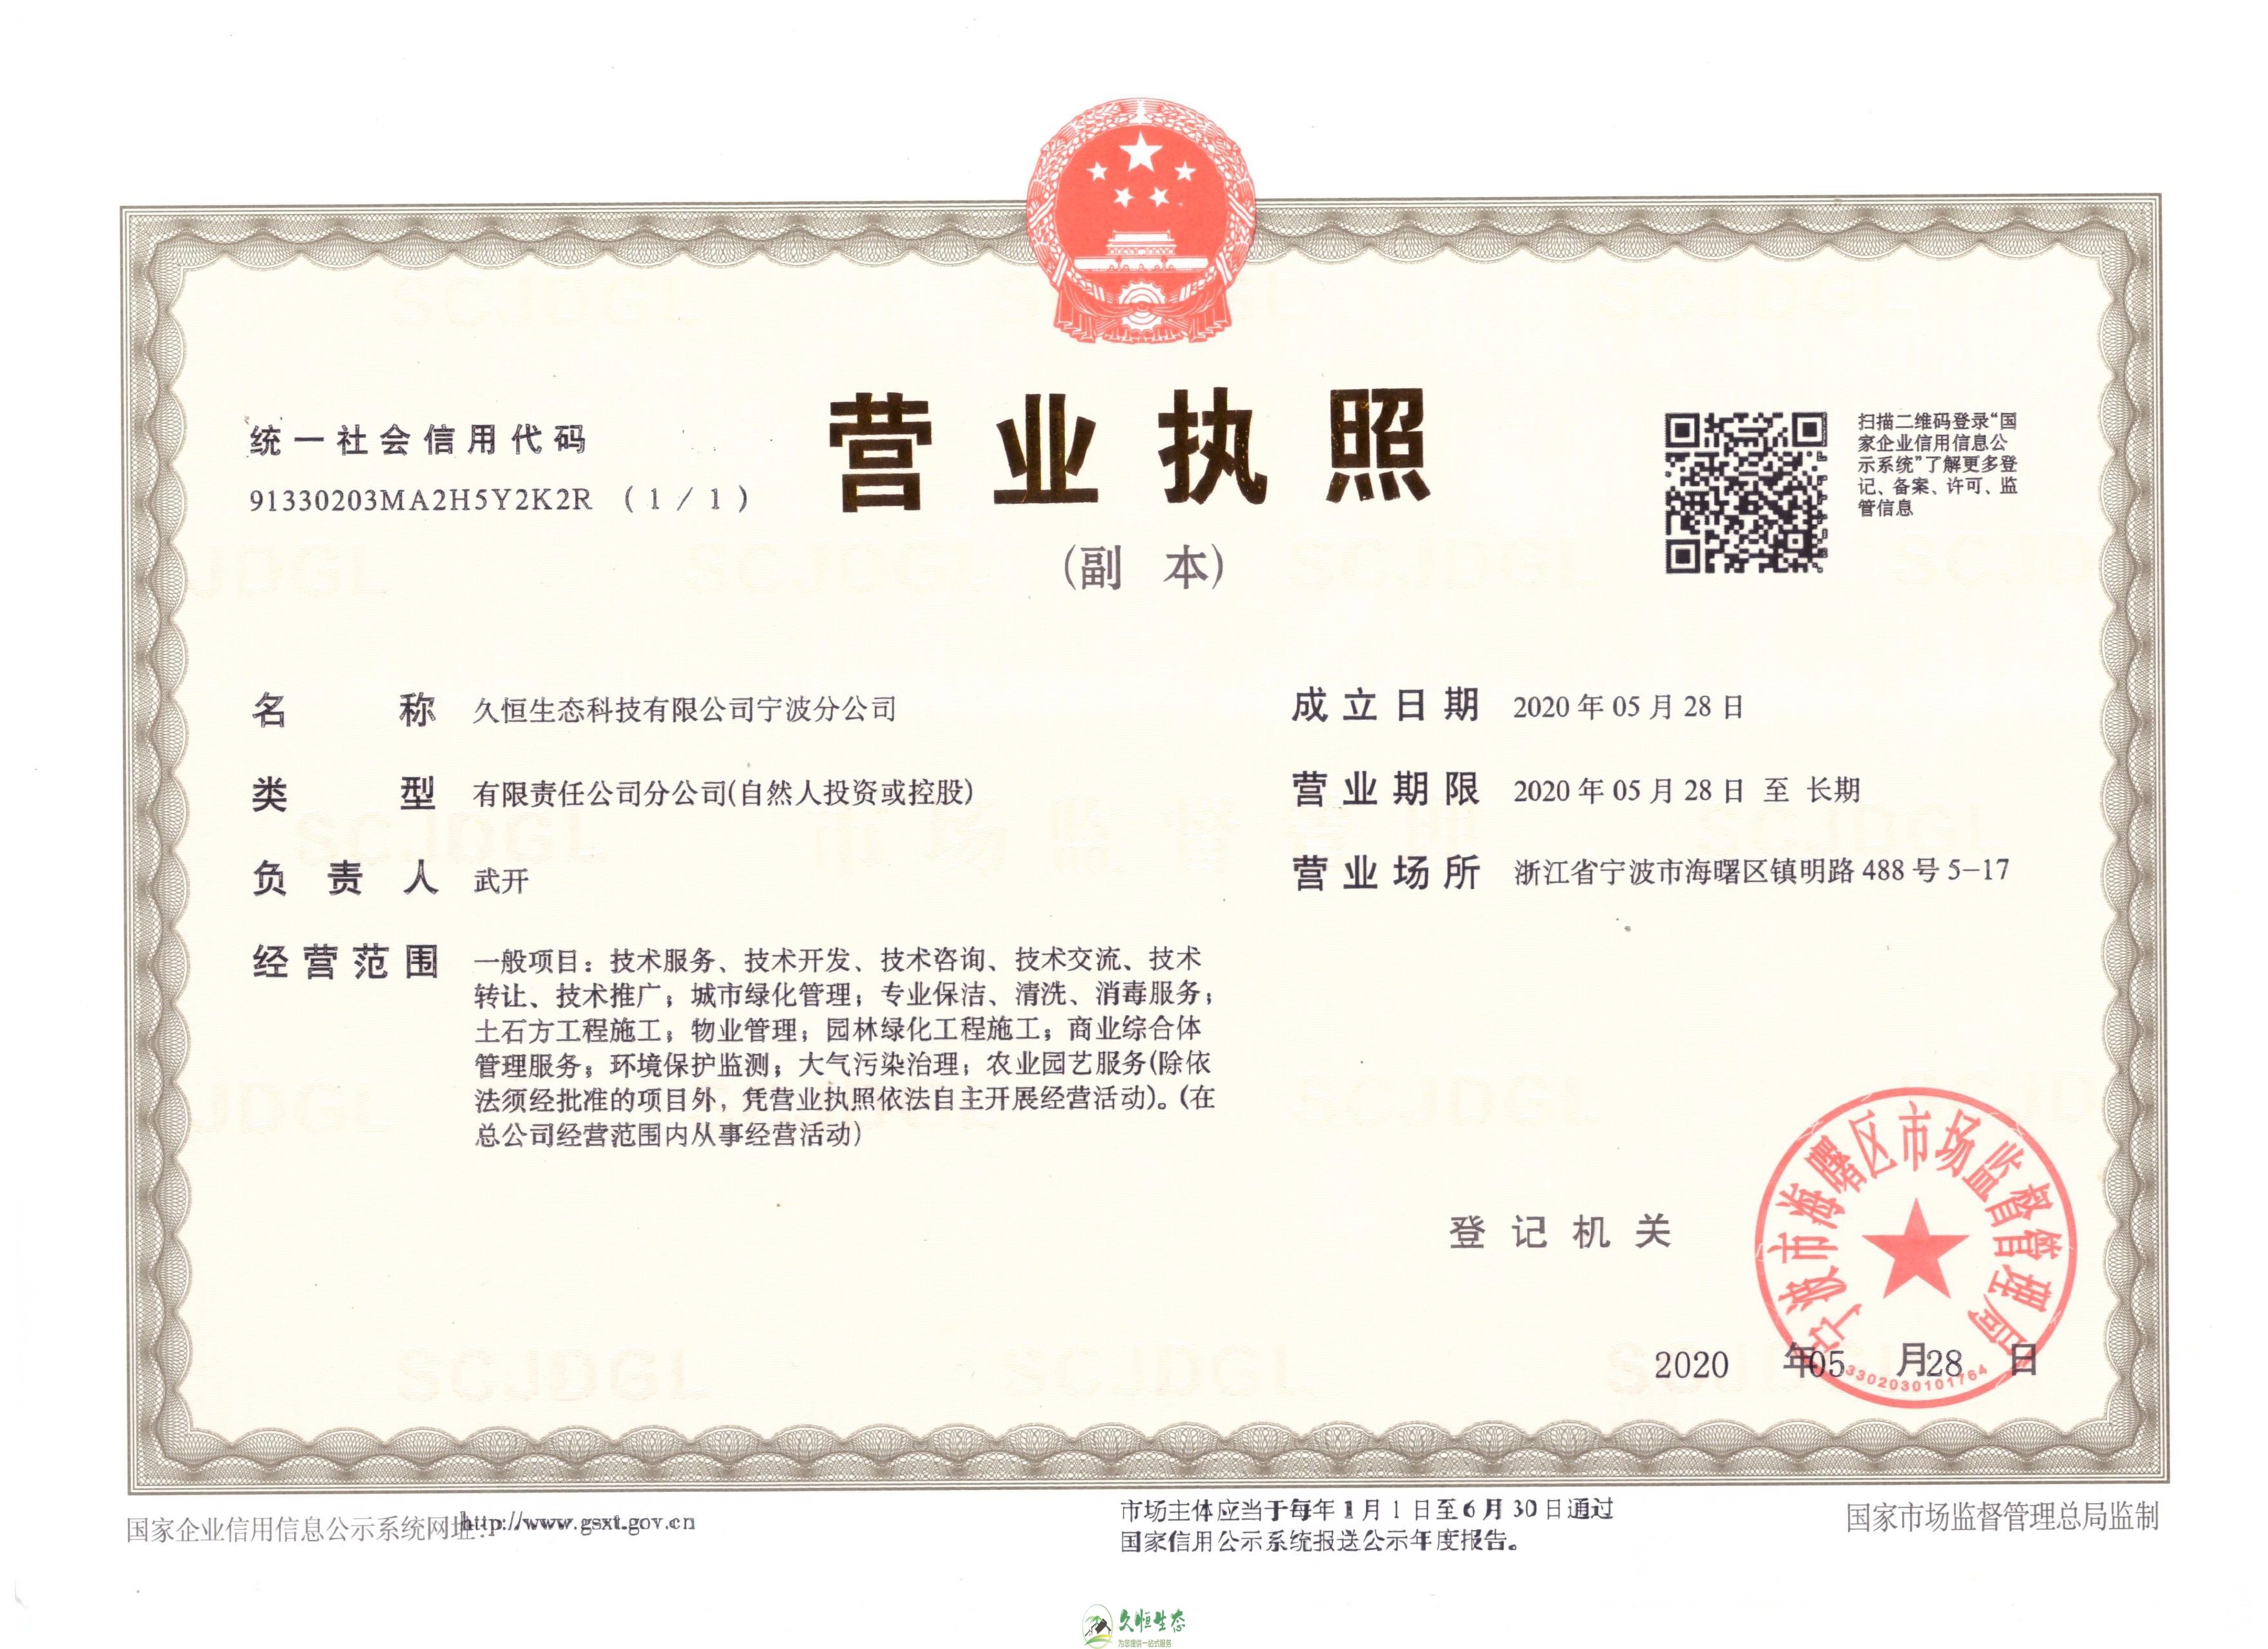 杭州下城久恒生态宁波分公司2020年5月28日成立